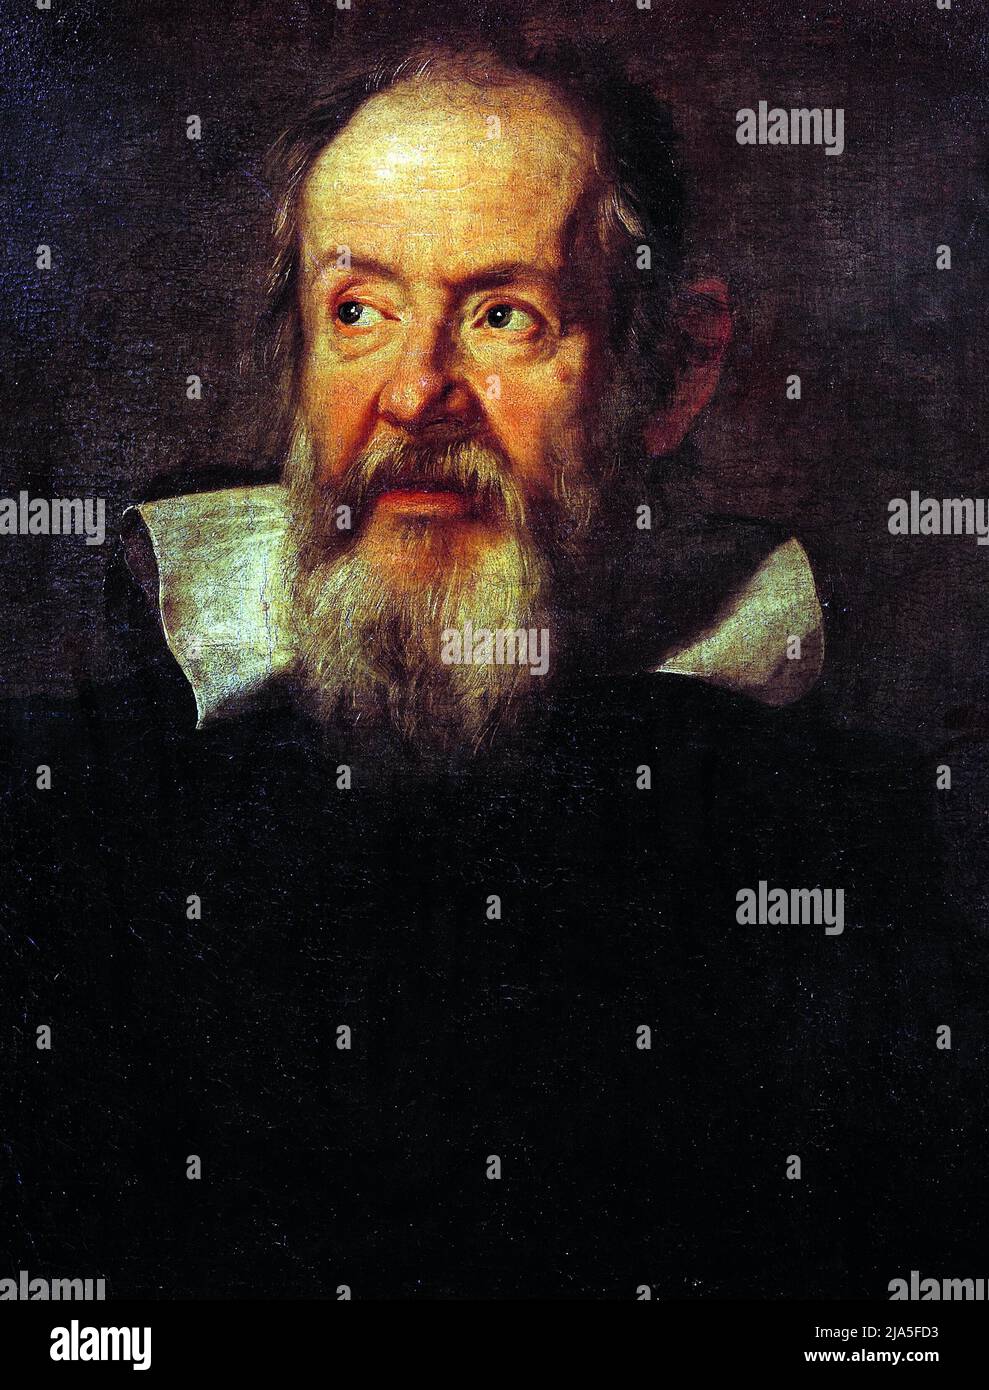 Titolo: Ritratto di Galileo Galilei Creatore: Justus Sustermans Data: C17th dimensioni: 66 x 56 cm Medio: Olio su tela luogo: Galleria degli Uffizi, Firenze Foto Stock